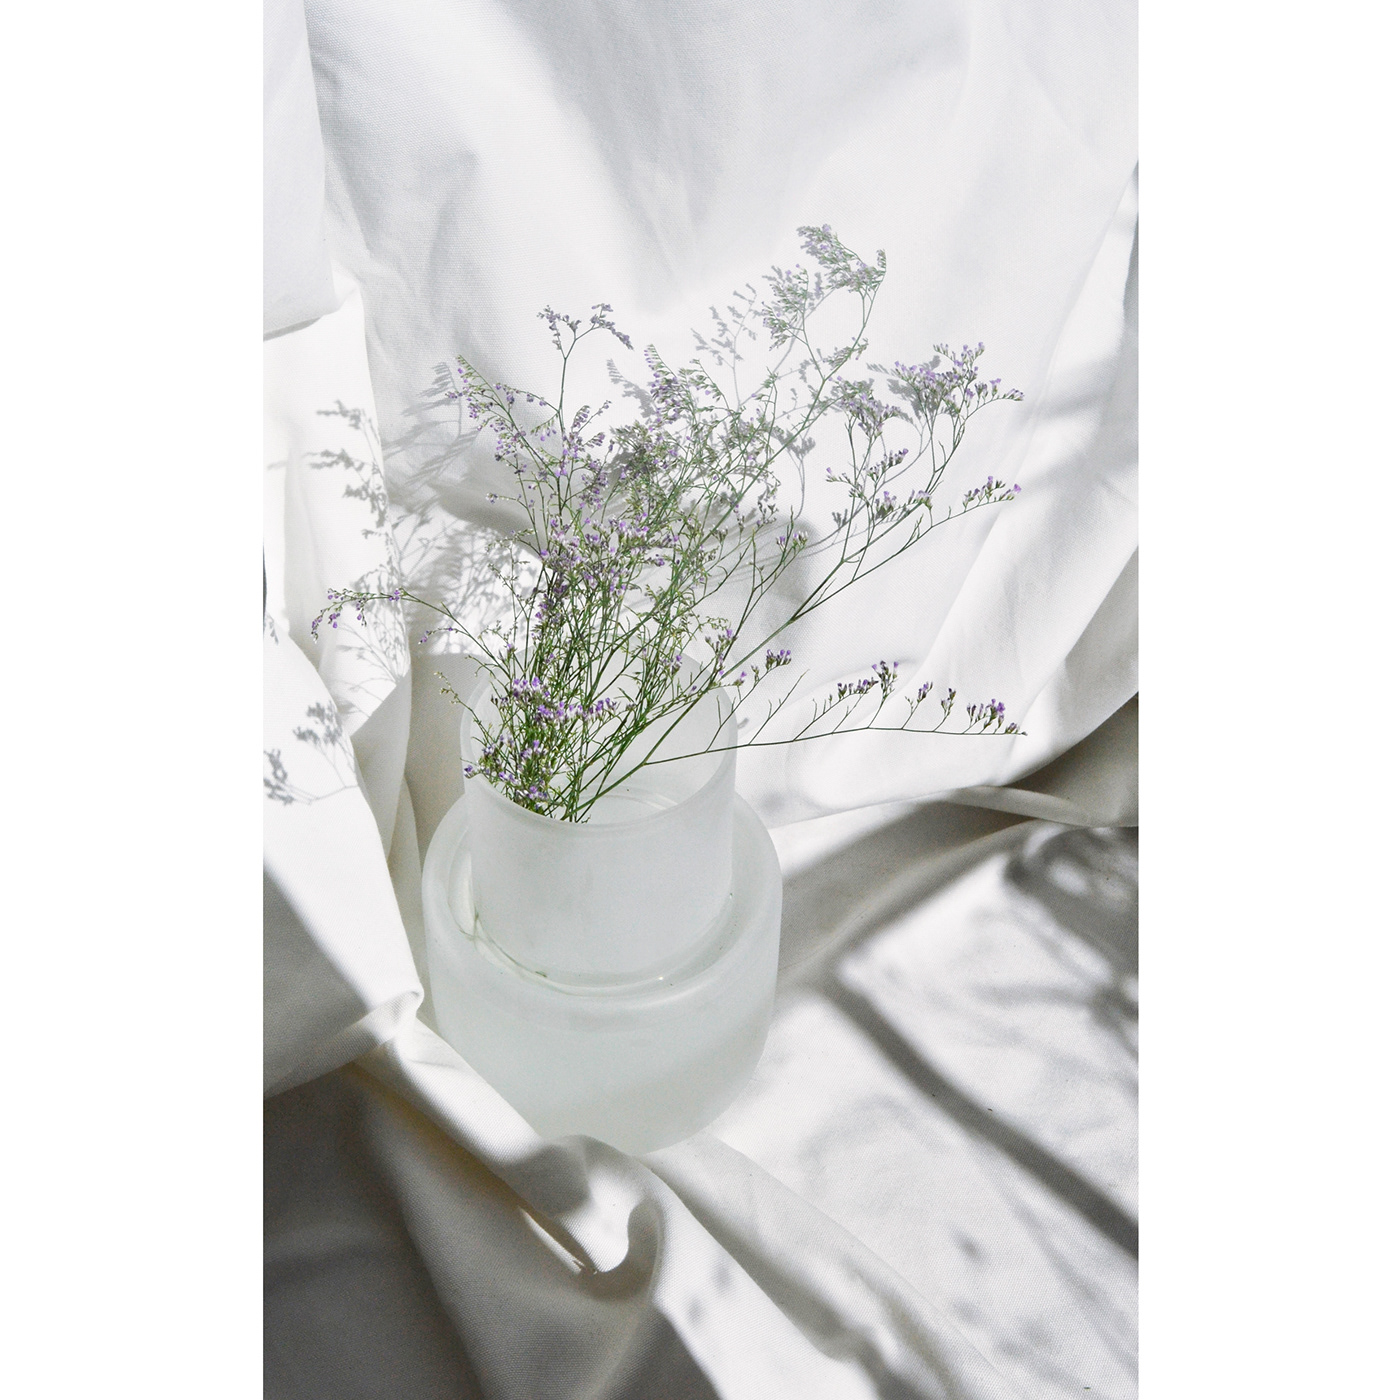 design glass Amber Vase product flower decor